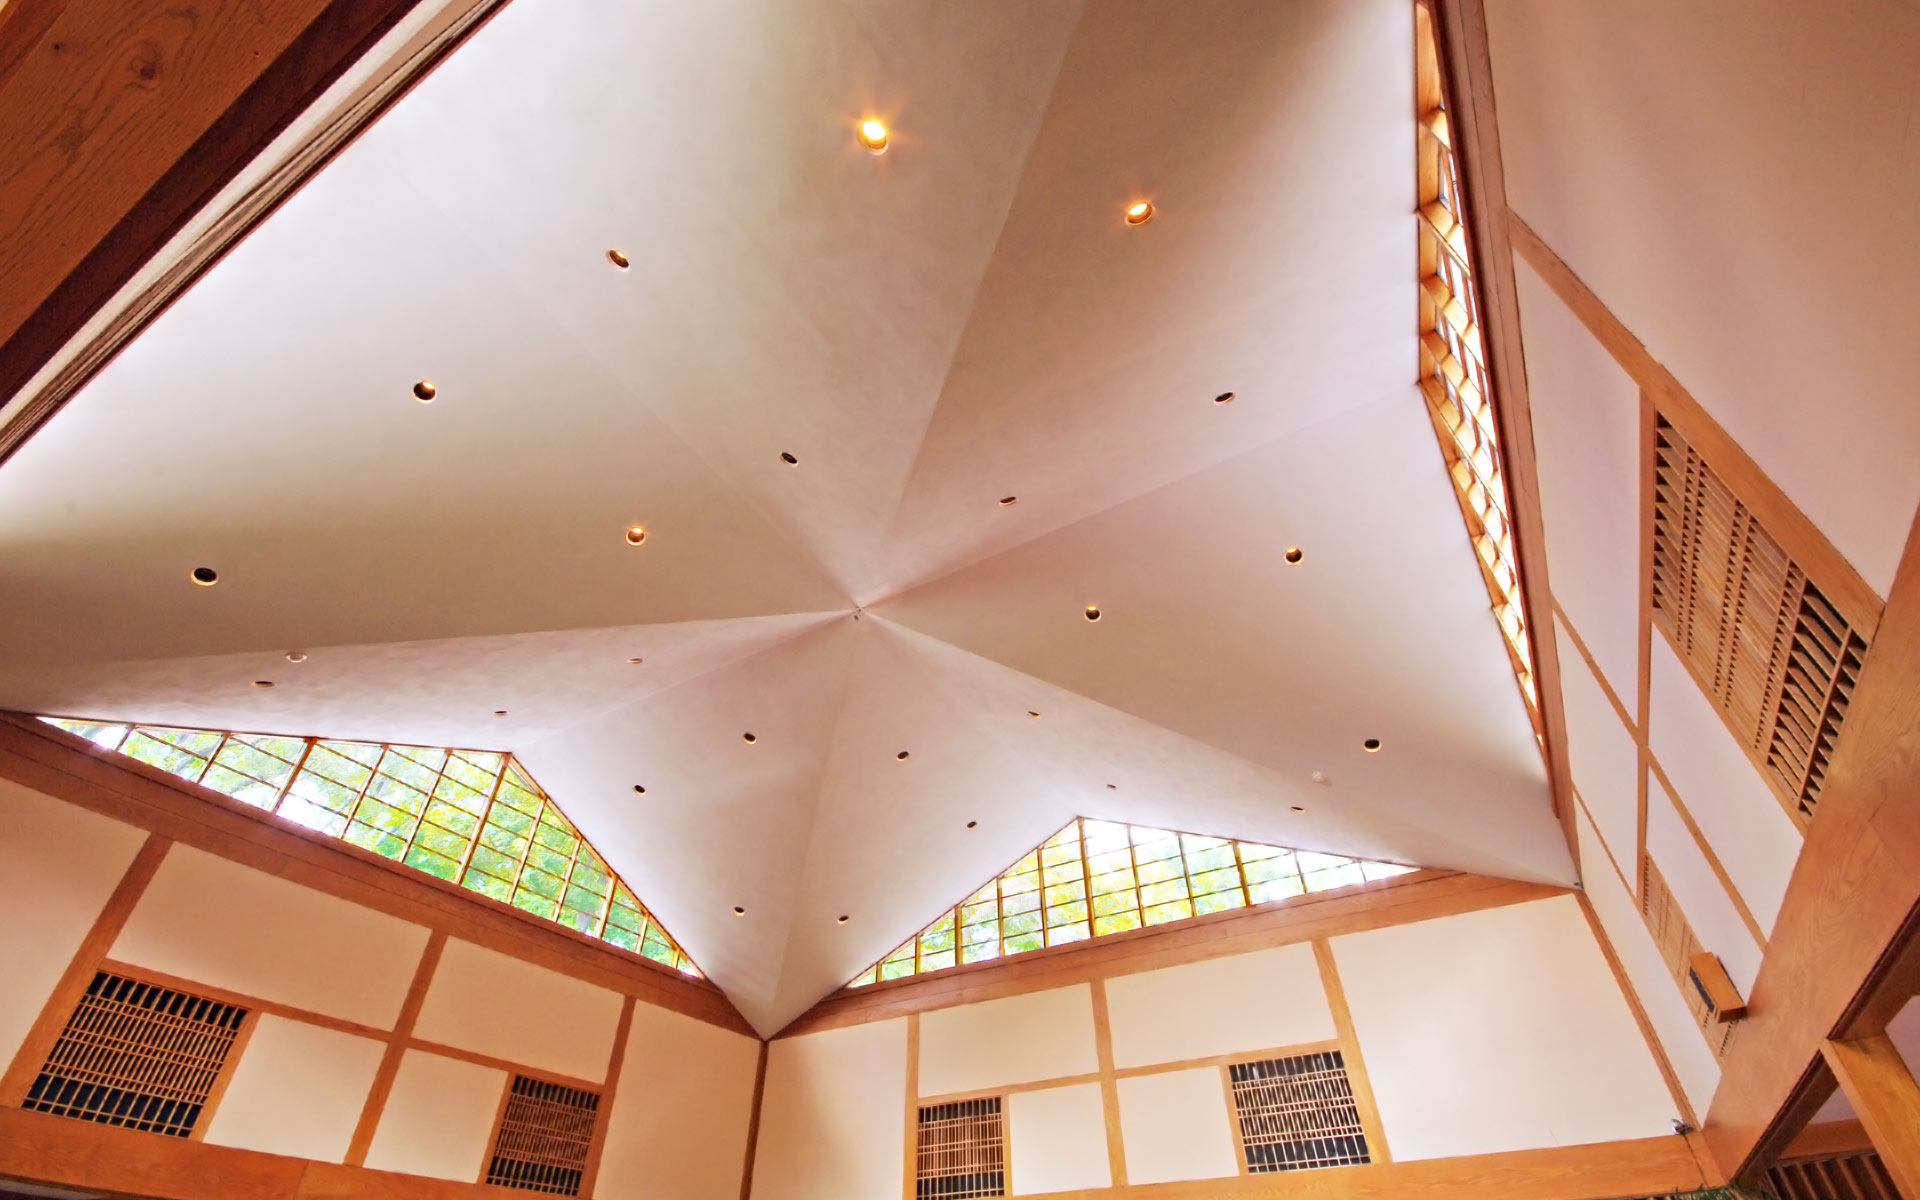 Winterthur Pavilion Ceiling